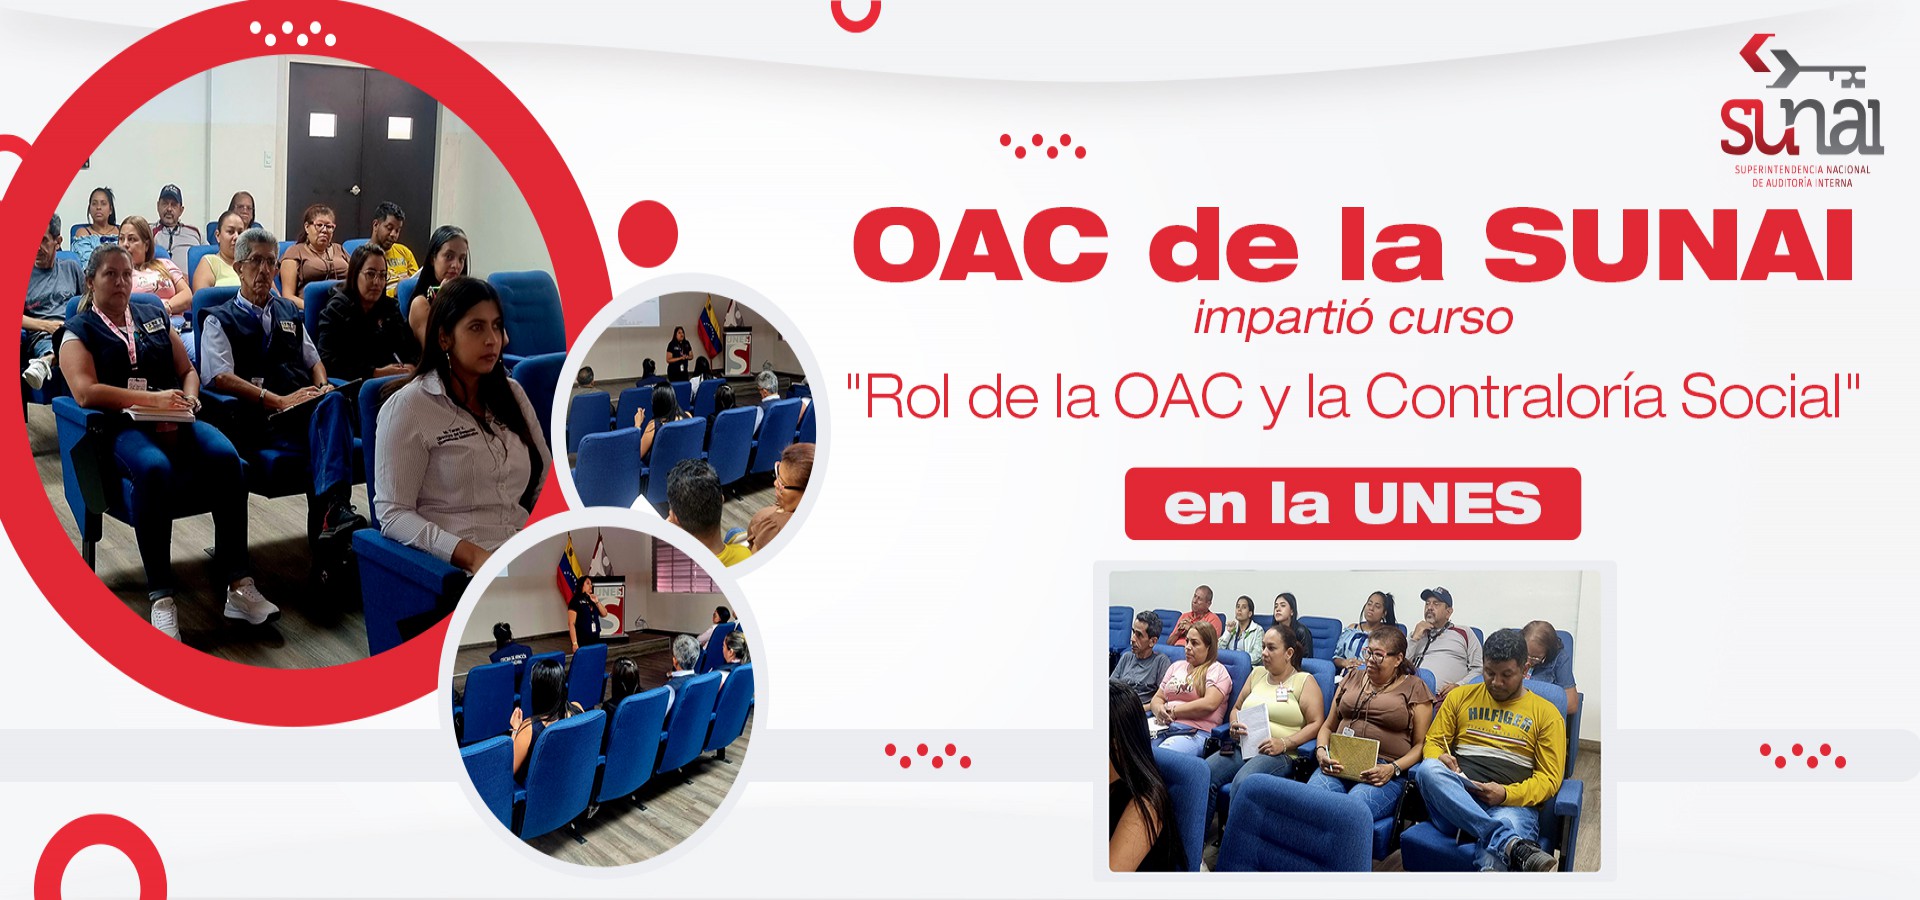 OAC de la SUNAI impartió "Rol de la OAC y la Contraloría Social" en la UNES